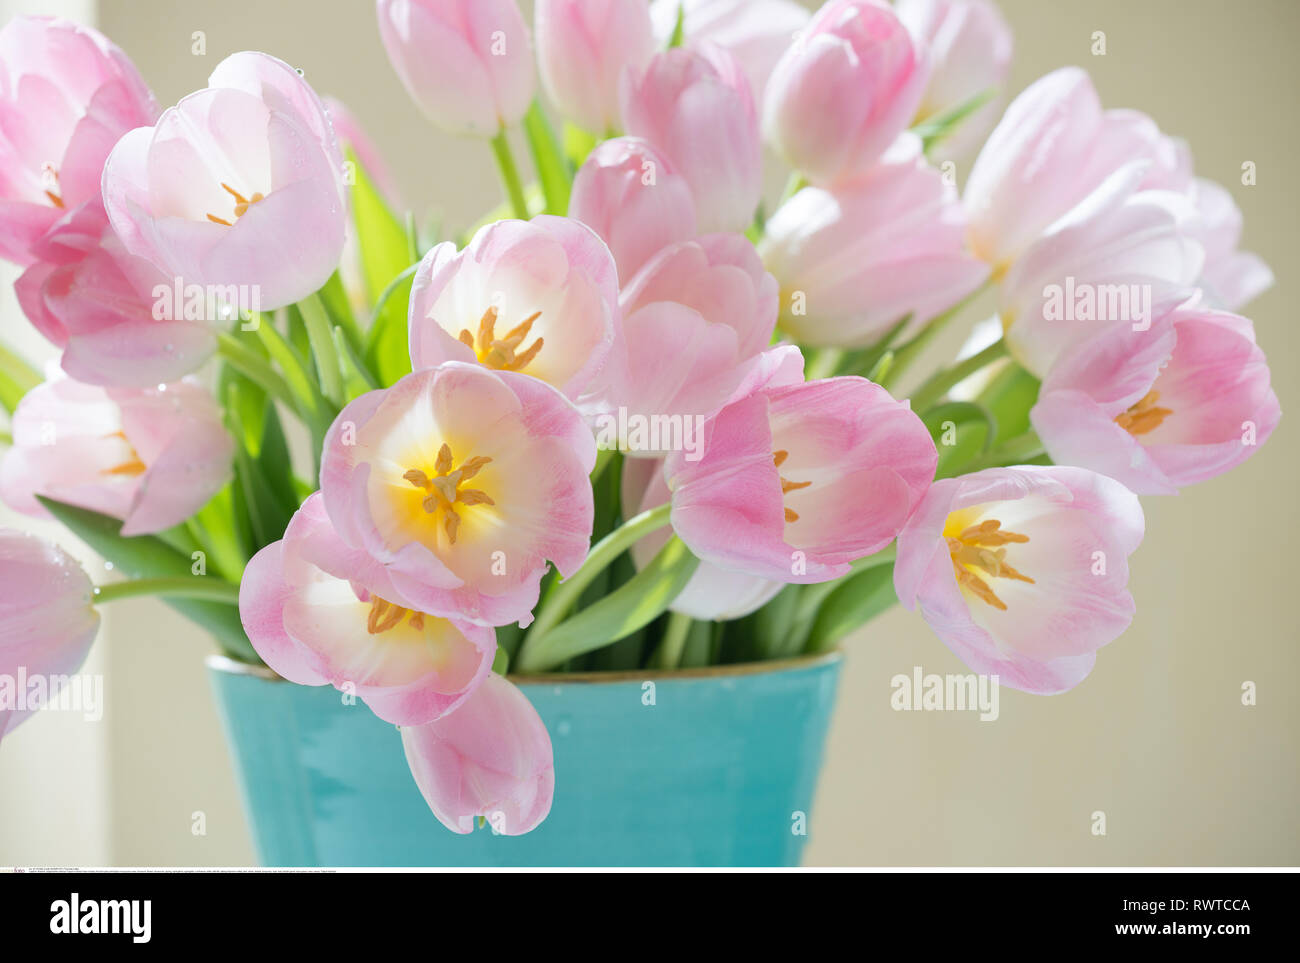 La botanica, fiorire rosa pallido tulipani in turquoi, attenzione! Per Greetingcard-Use / Postcard-Use nei Paesi di lingua tedesca talune restrizioni possono applicare Foto Stock